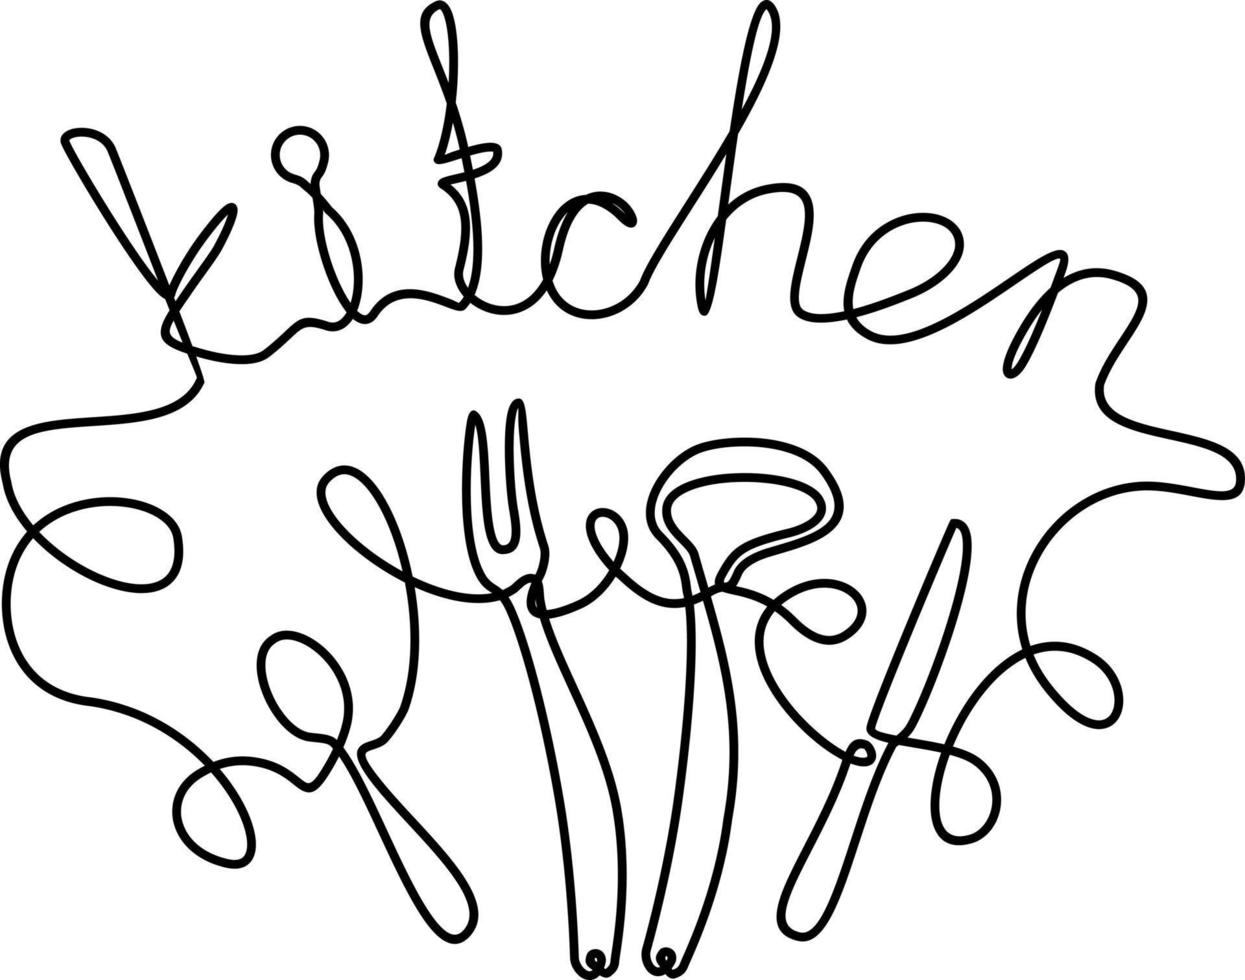 cucina. frase scritta a mano da una riga. elemento di testo vettoriale monolinea